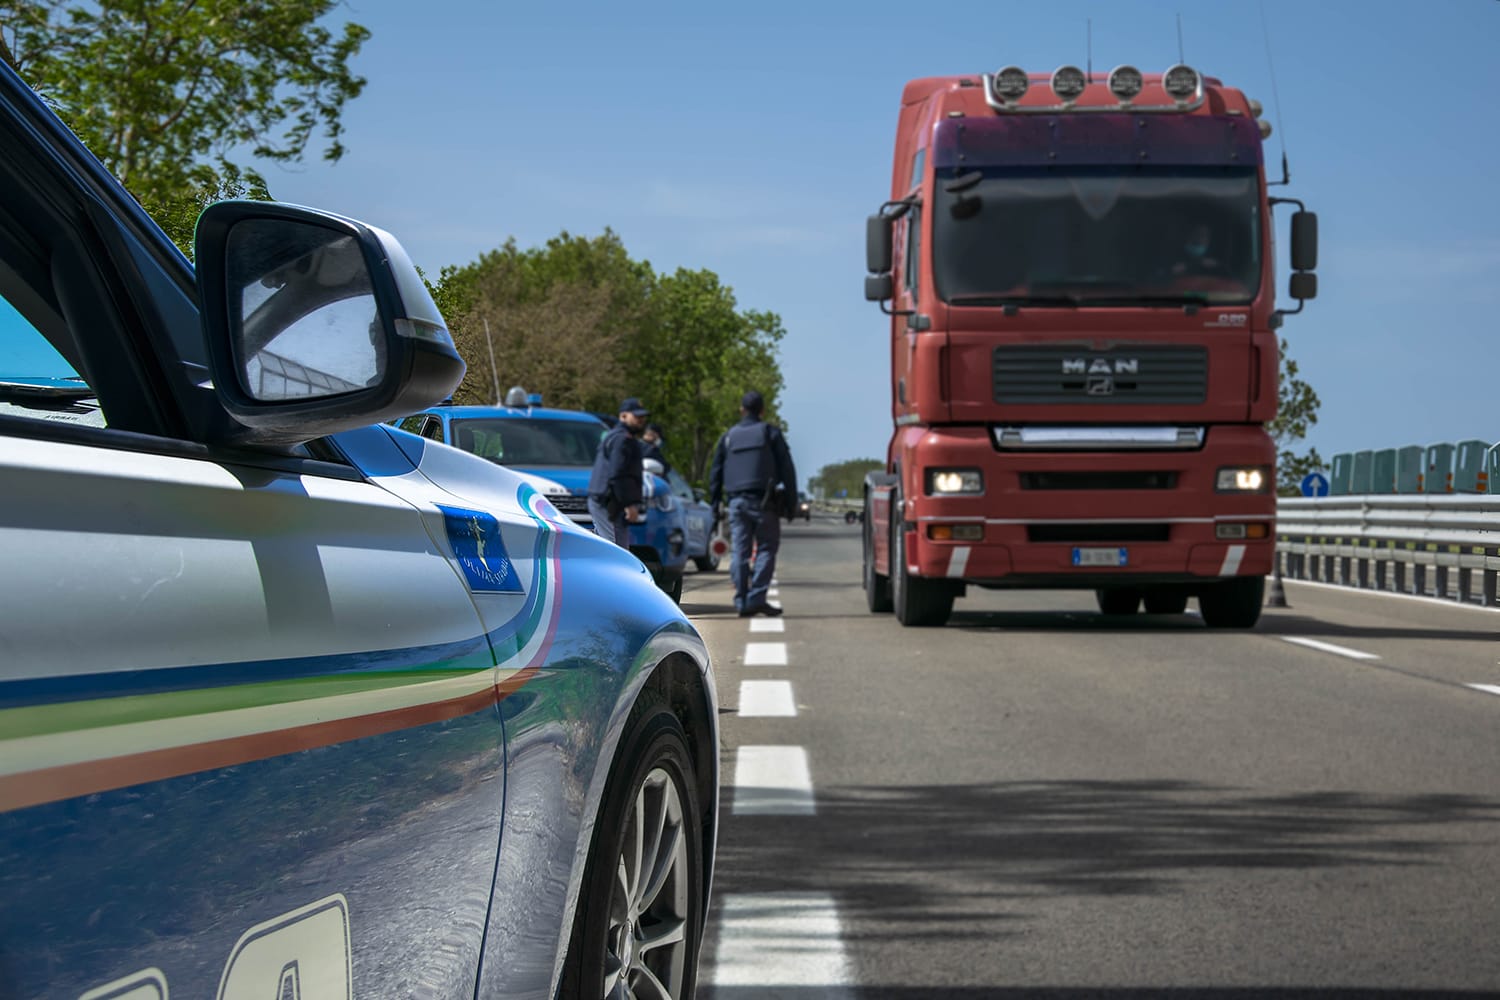 Sardegna. Operazione “truck & bus”: controlli mirati della Polizia stradale